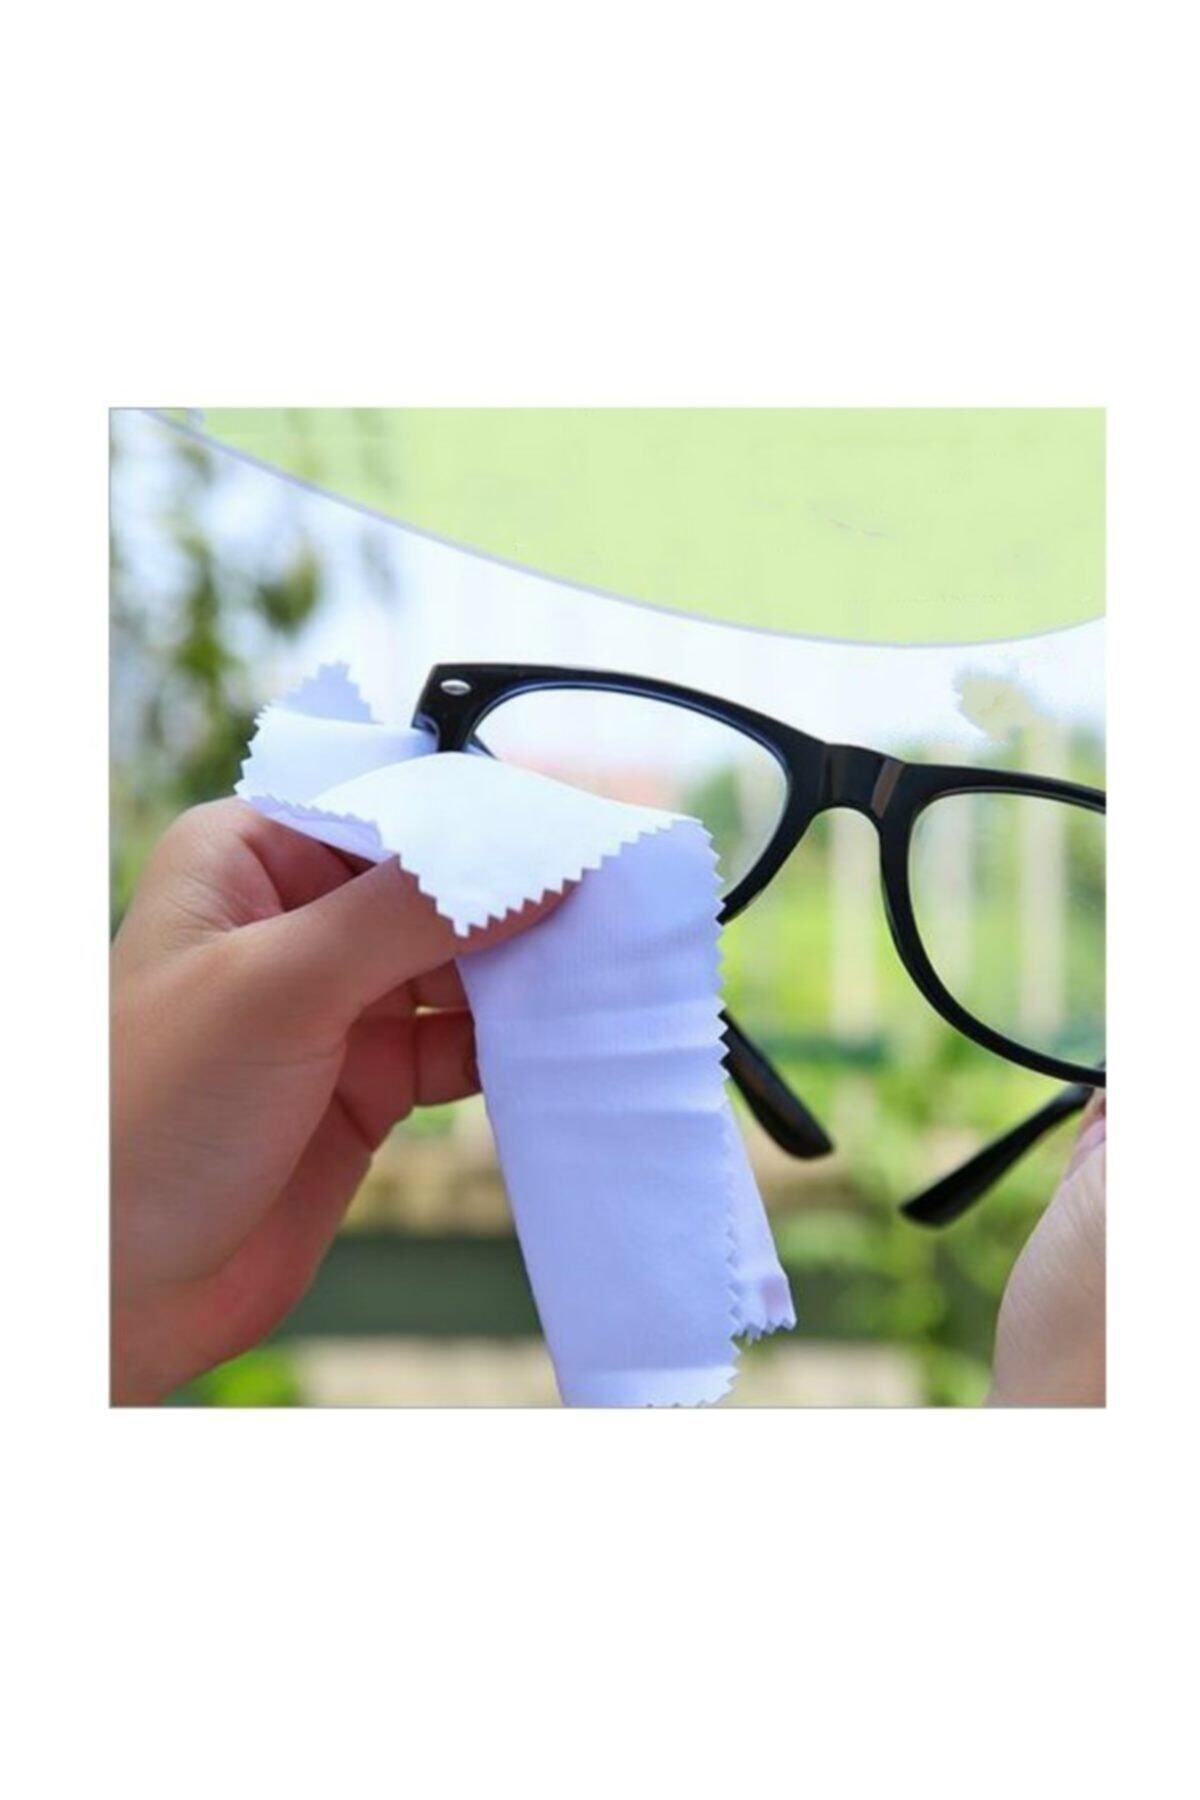 Ege Optik Gözlük Camı Temizleme Mikrofiber Bezi (10 Adet)